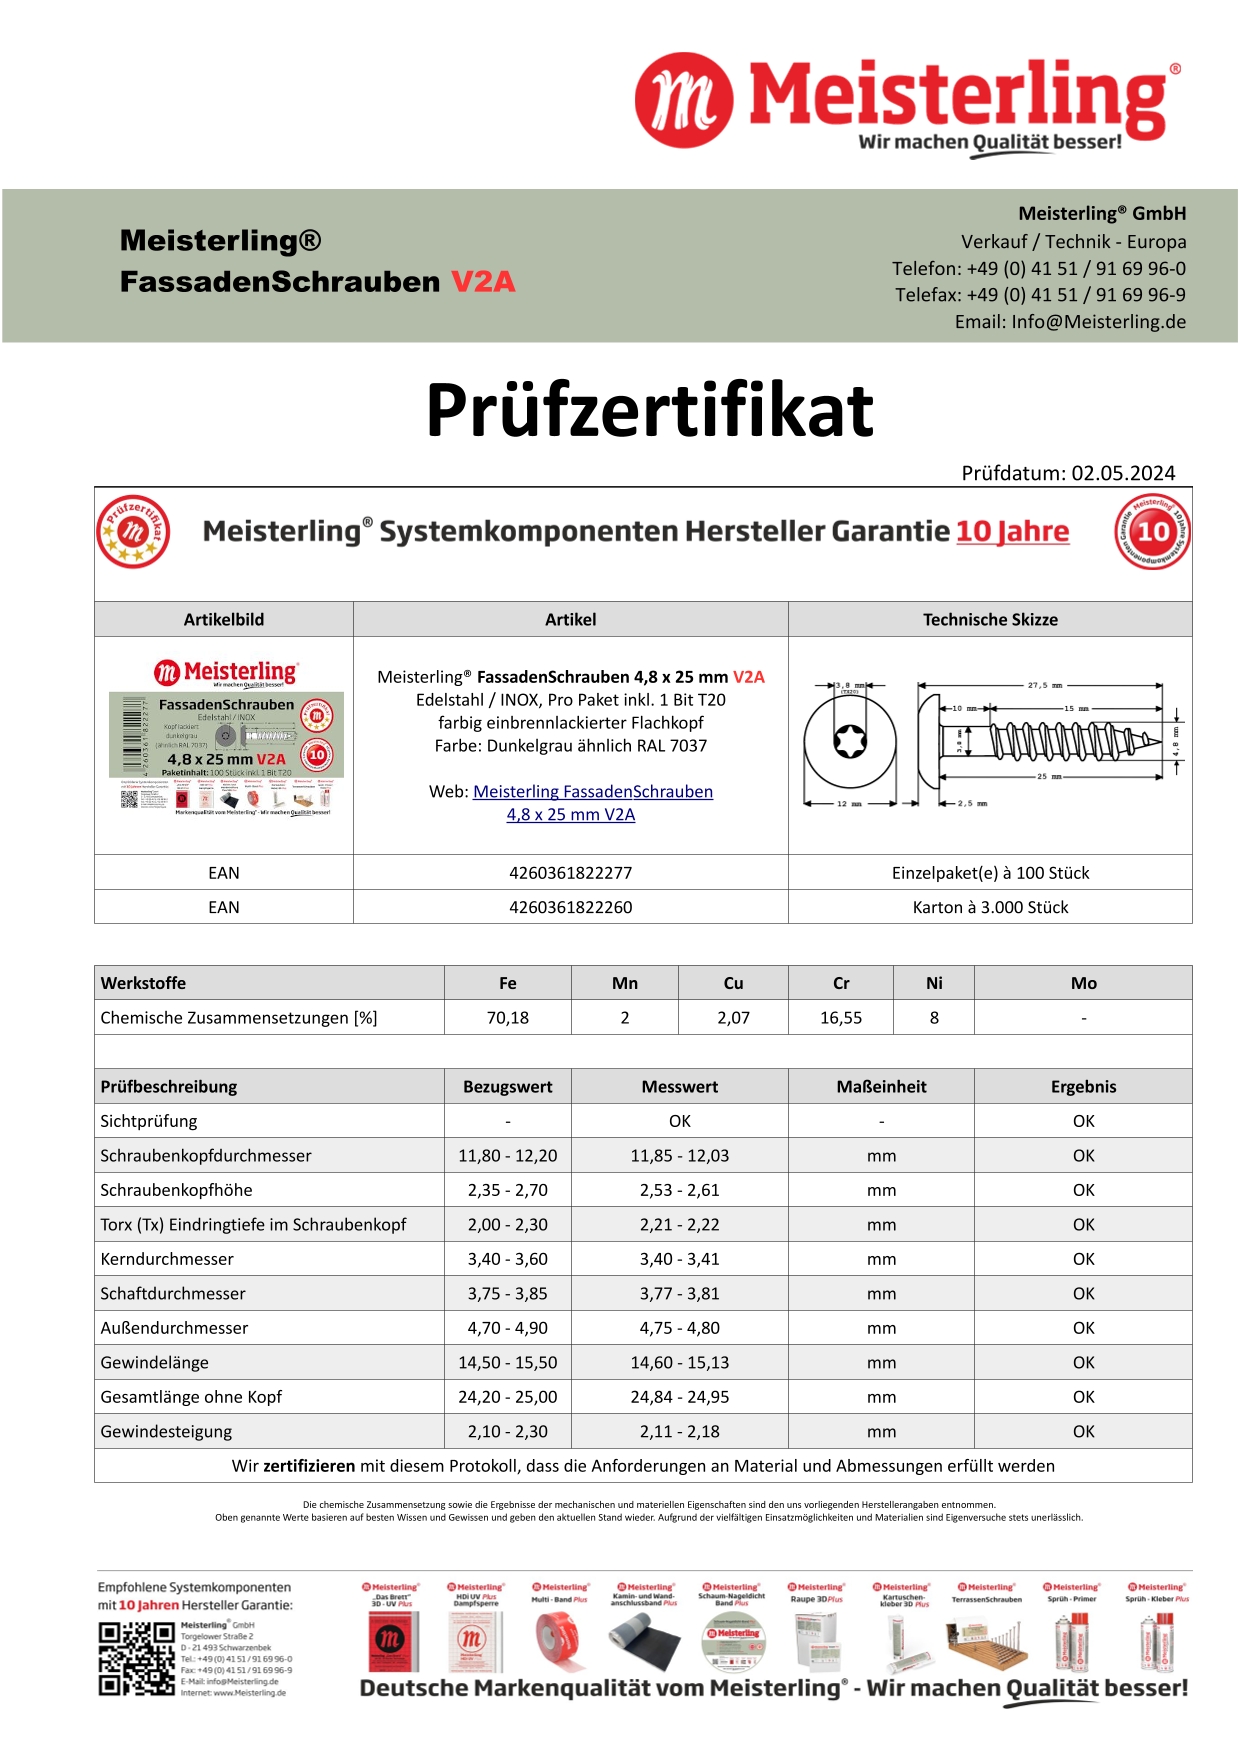 Prüfzertifikat Meisterling® FassadenSchrauben 4,8 x 25 mm V2a dunkelgrau